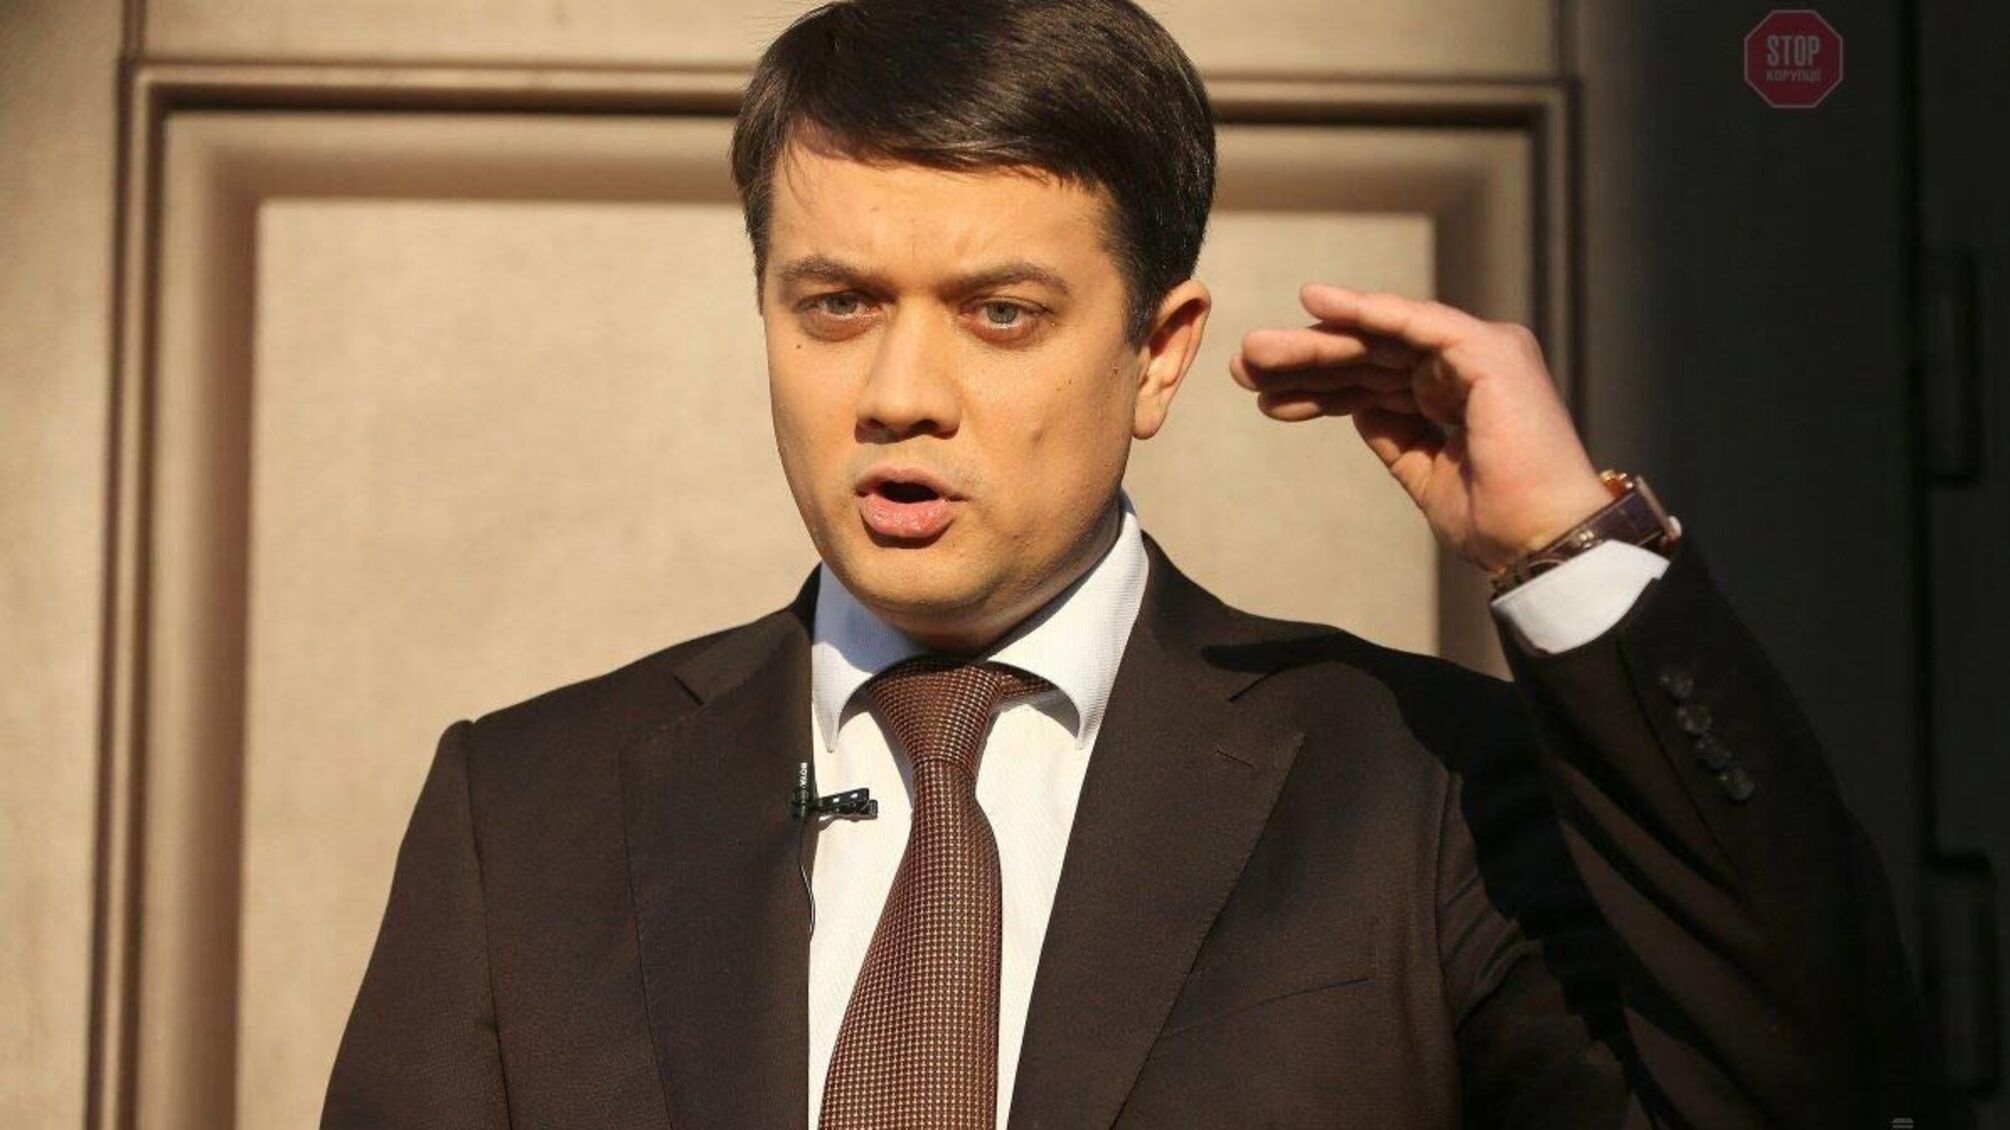 “Війну на Донбасі неможливо вирішити лише законами”, – Разумков